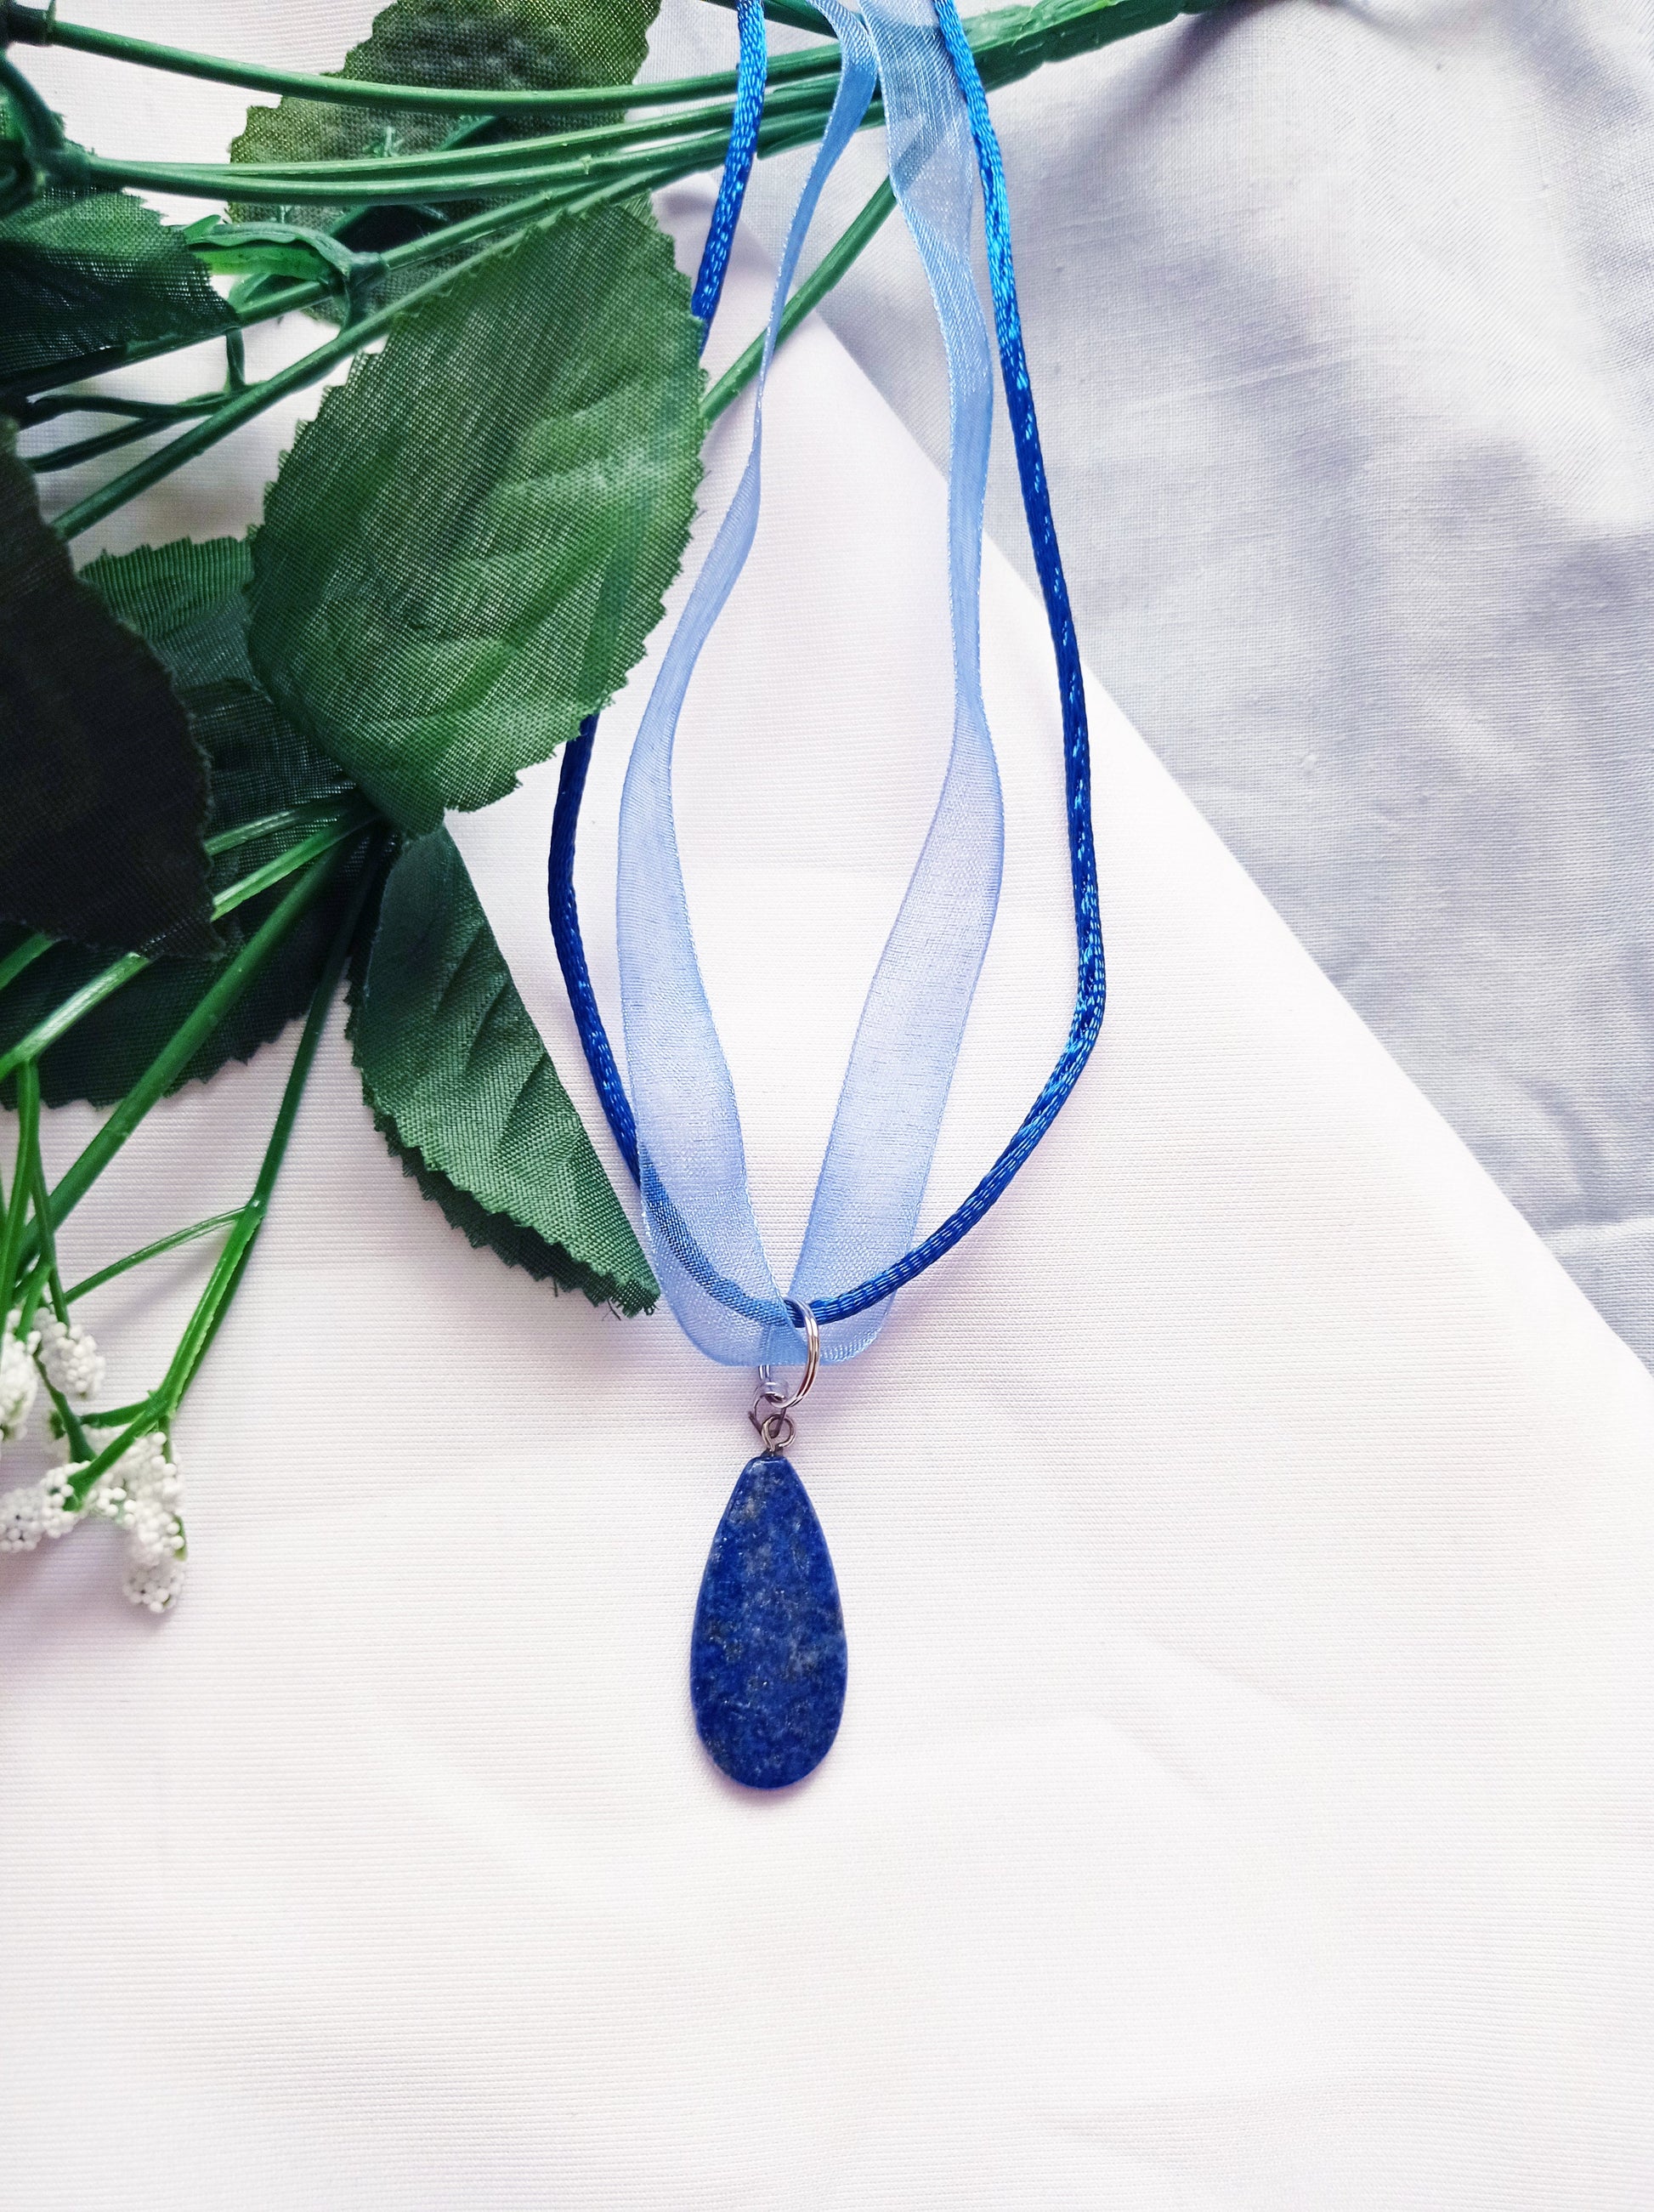 Lapis Lazuli Necklace, Blue Ribbon Necklace, Gemstone Necklace, Lapis Lazuli Pendant | by nlanlaVictory-2